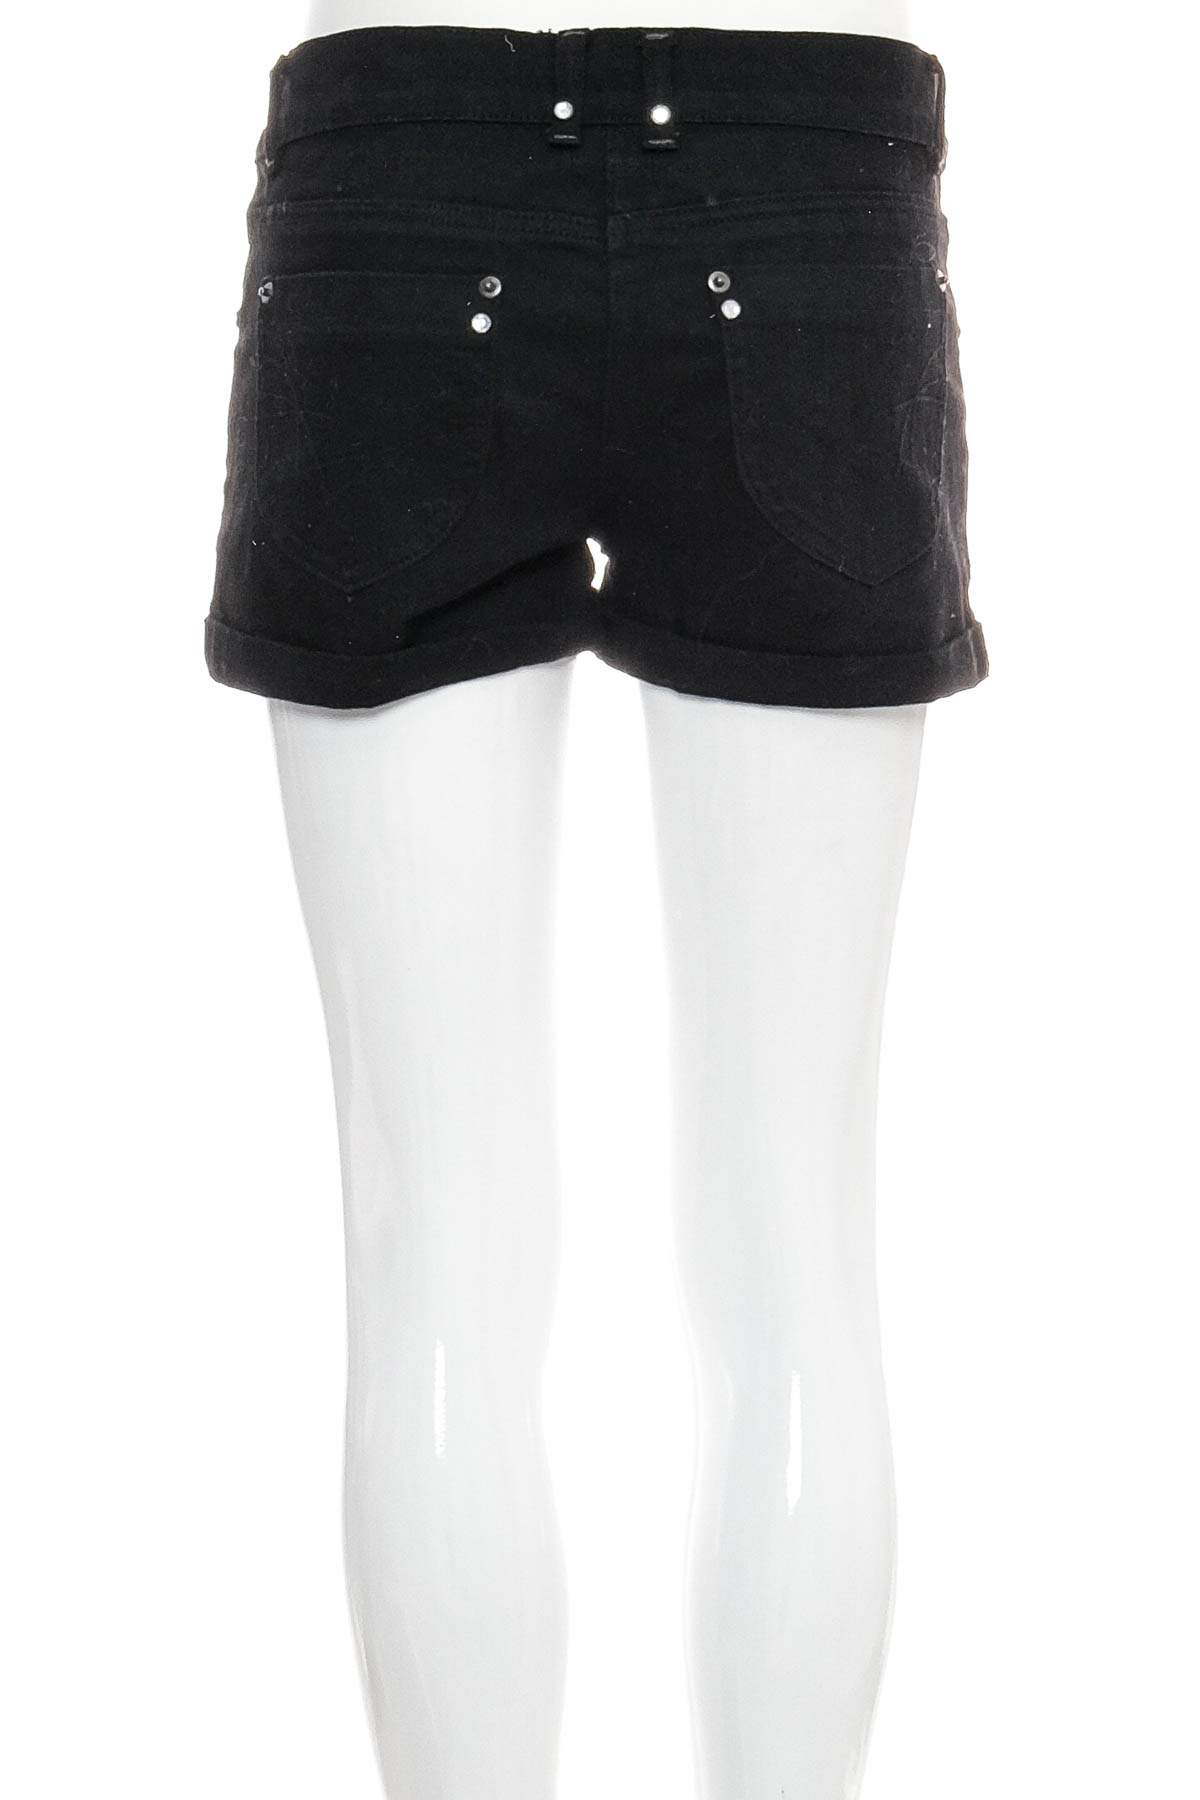 Female shorts - X-Mail - 1